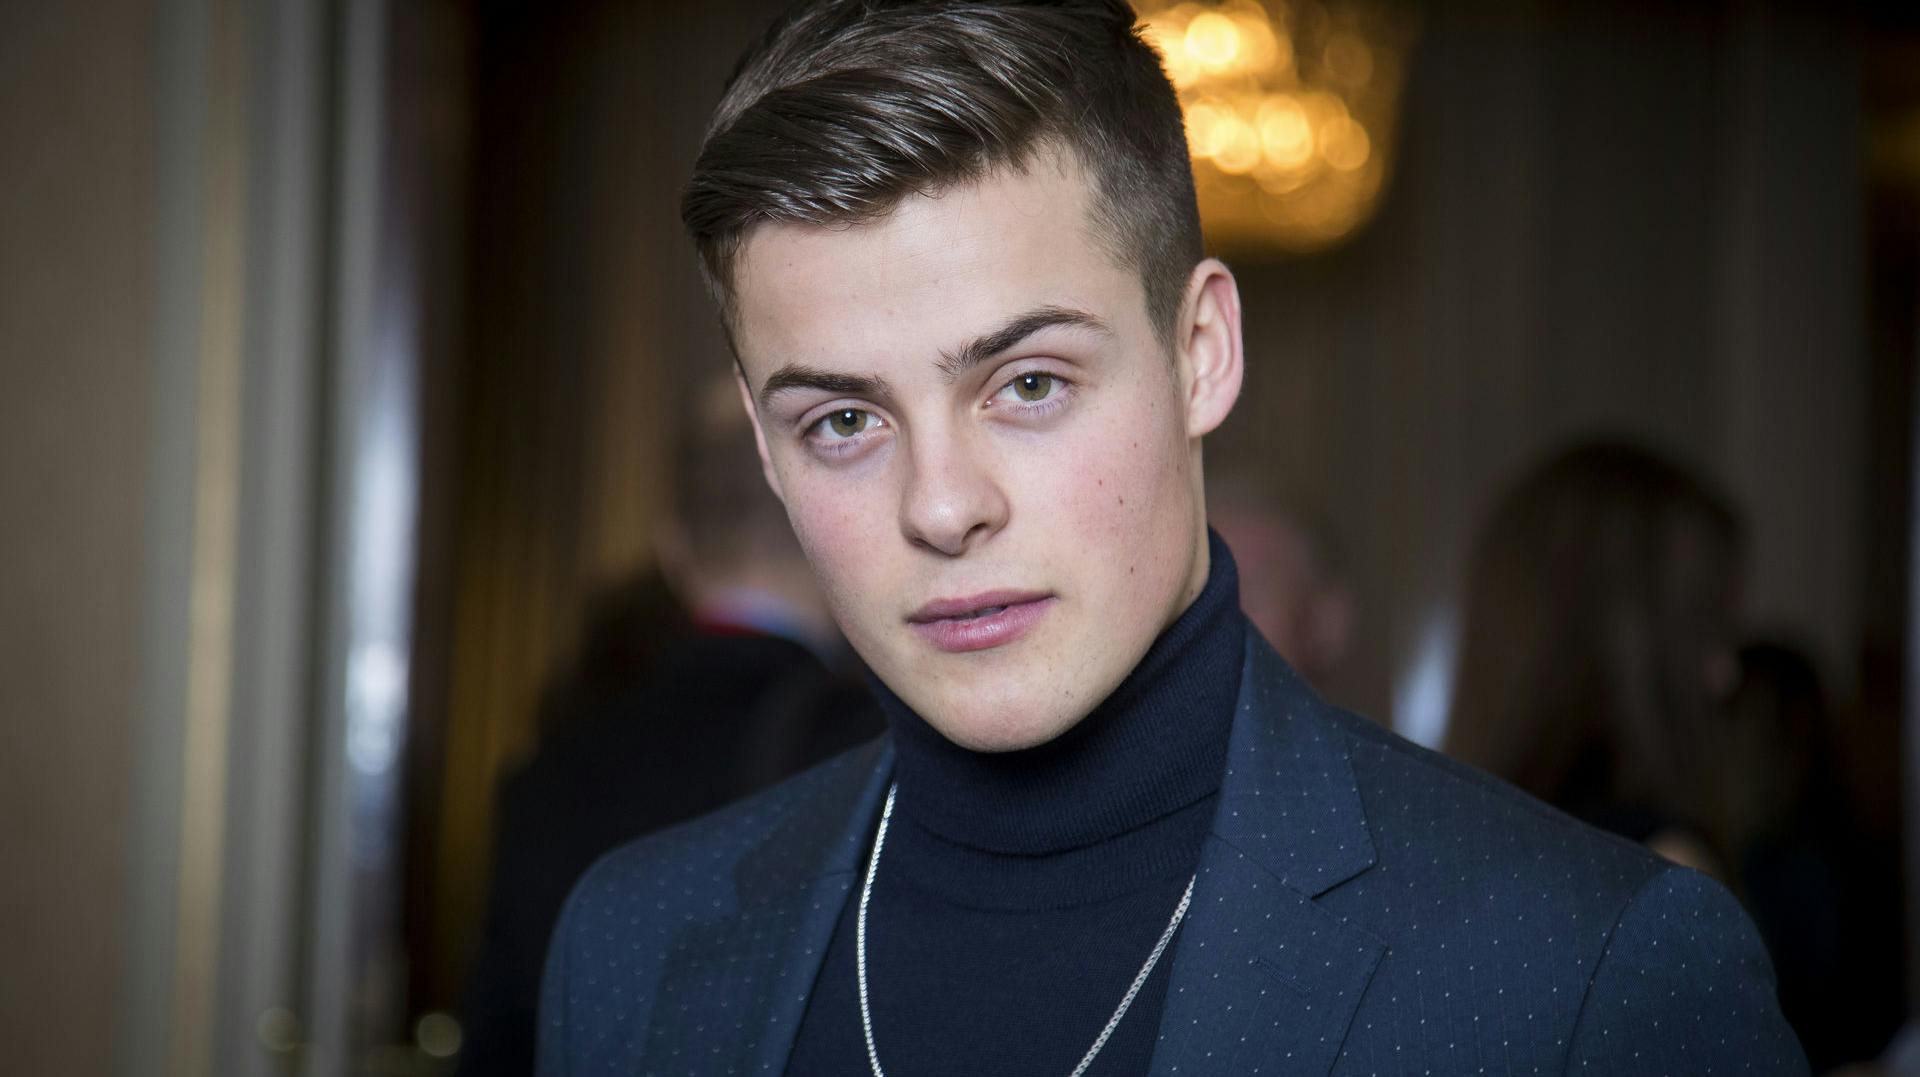 Herman Tømmeraas slog igennem som skuespiller med rollen "Chris" i den norske ungdomsserie "SKAM" fra 2017.&nbsp;